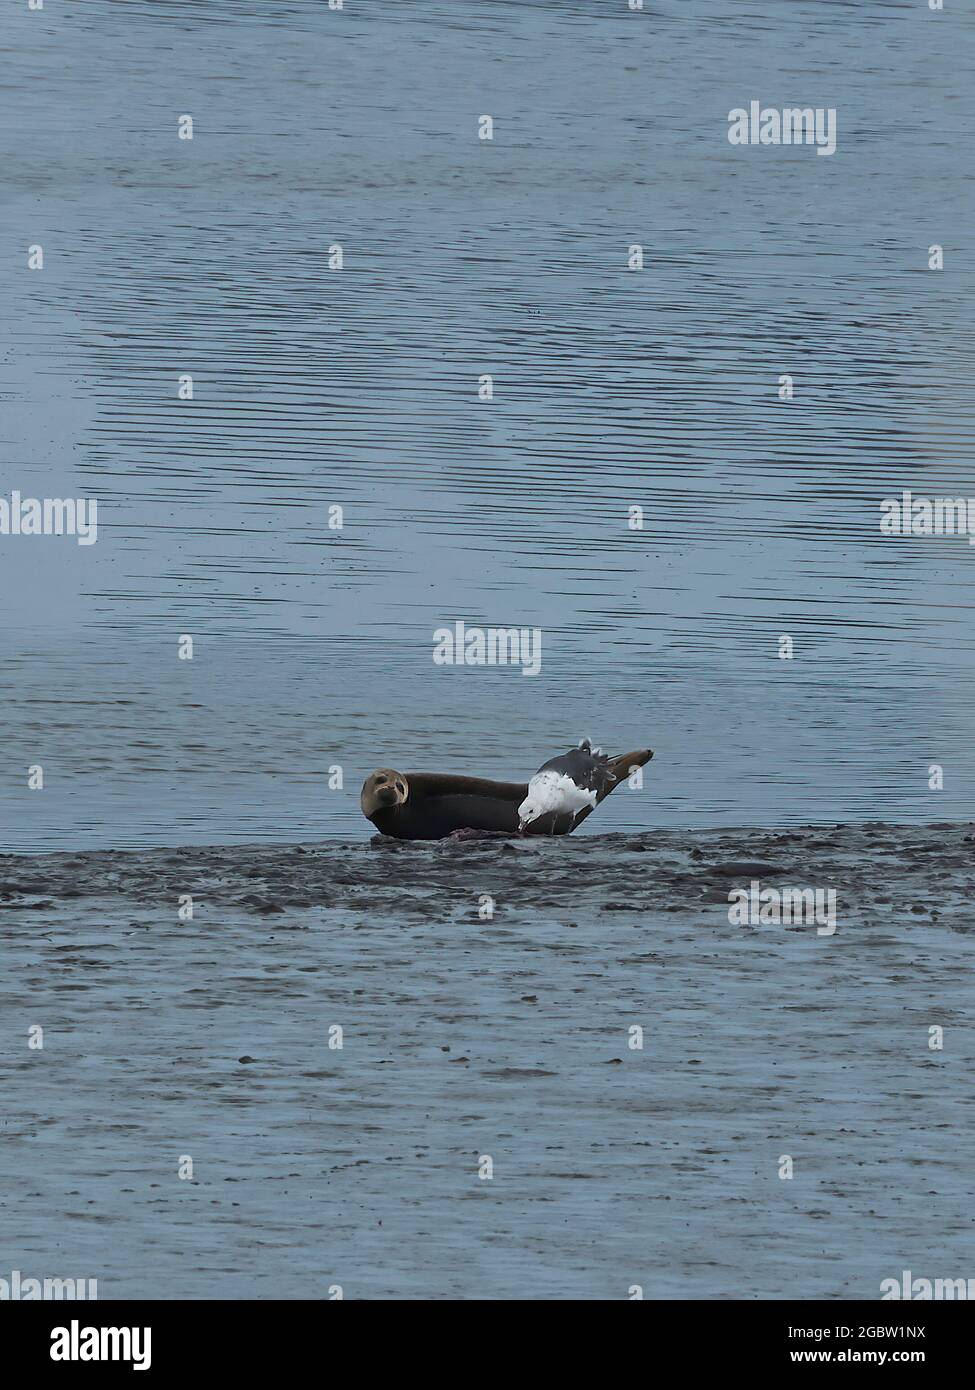 Ein heruntergedeckter Robbenhund an einem schlammigen Bachufer sieht so aus, als eine Möwe in der Nähe Nahrung stiehlt. Stockfoto